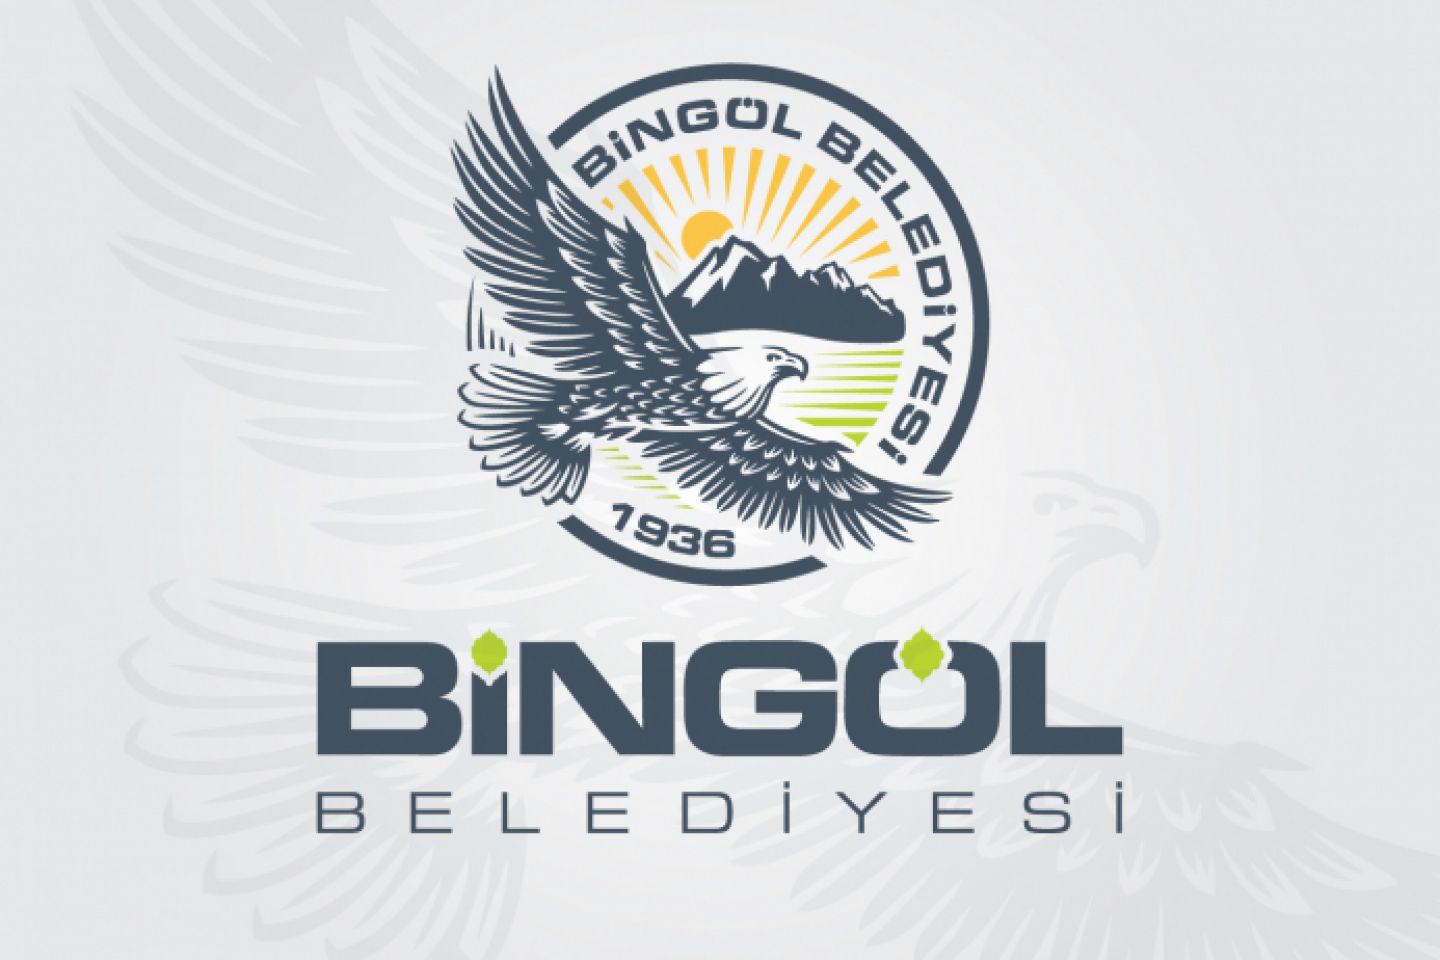 Bingöl belediyesi logosunu değiştirdi